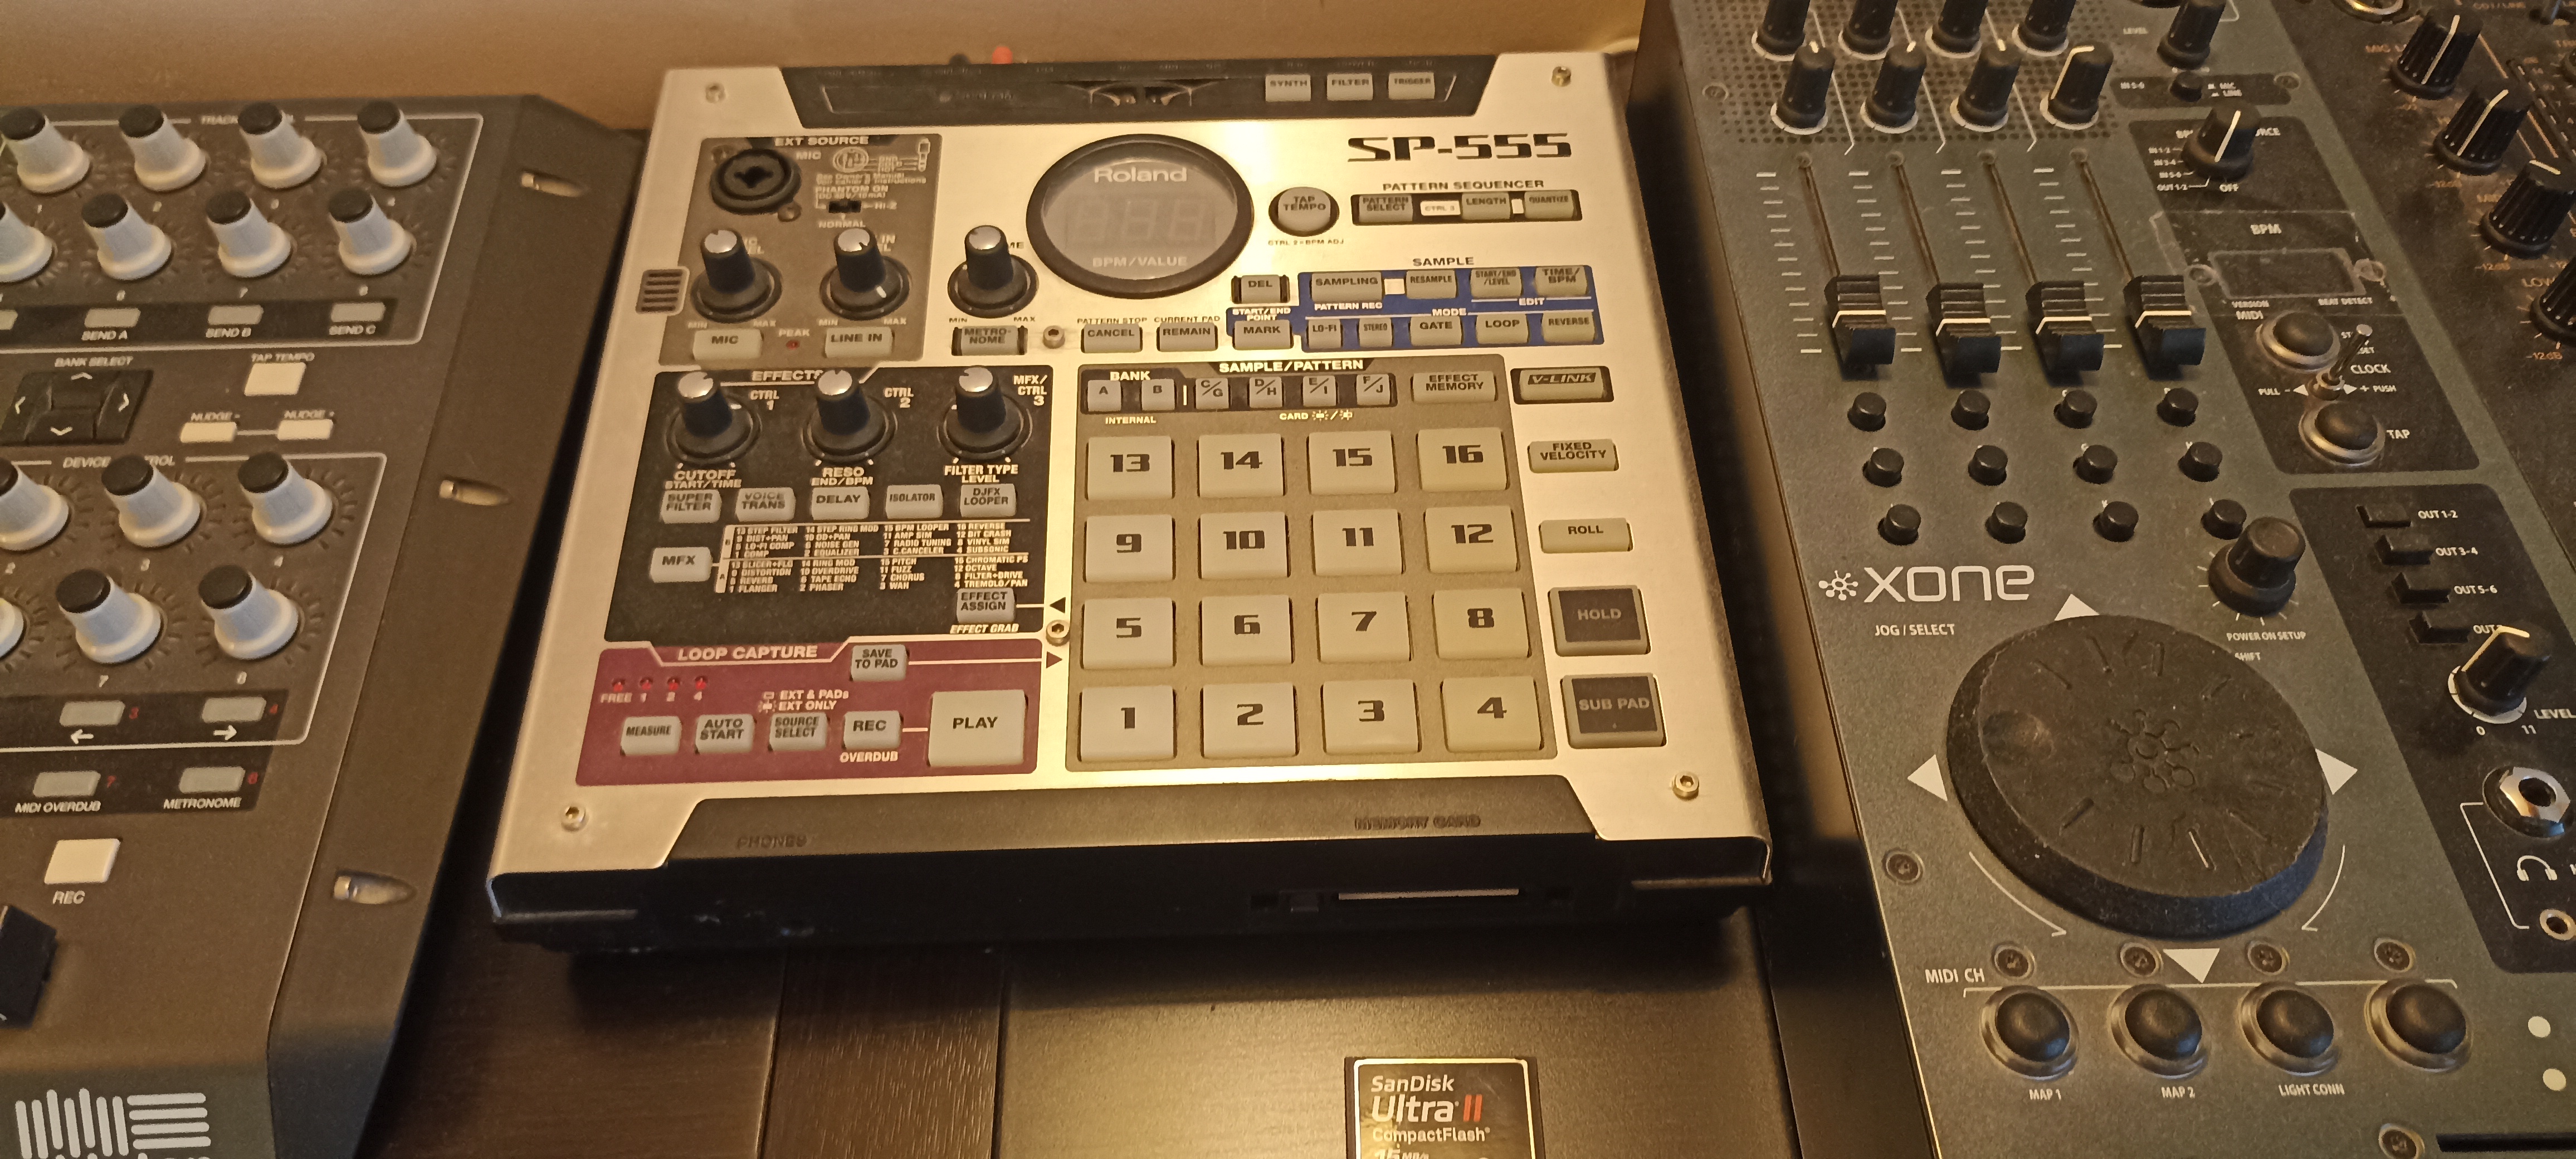 ROLAND ( ローランド ) SP-555 サンプラー - DJ機器